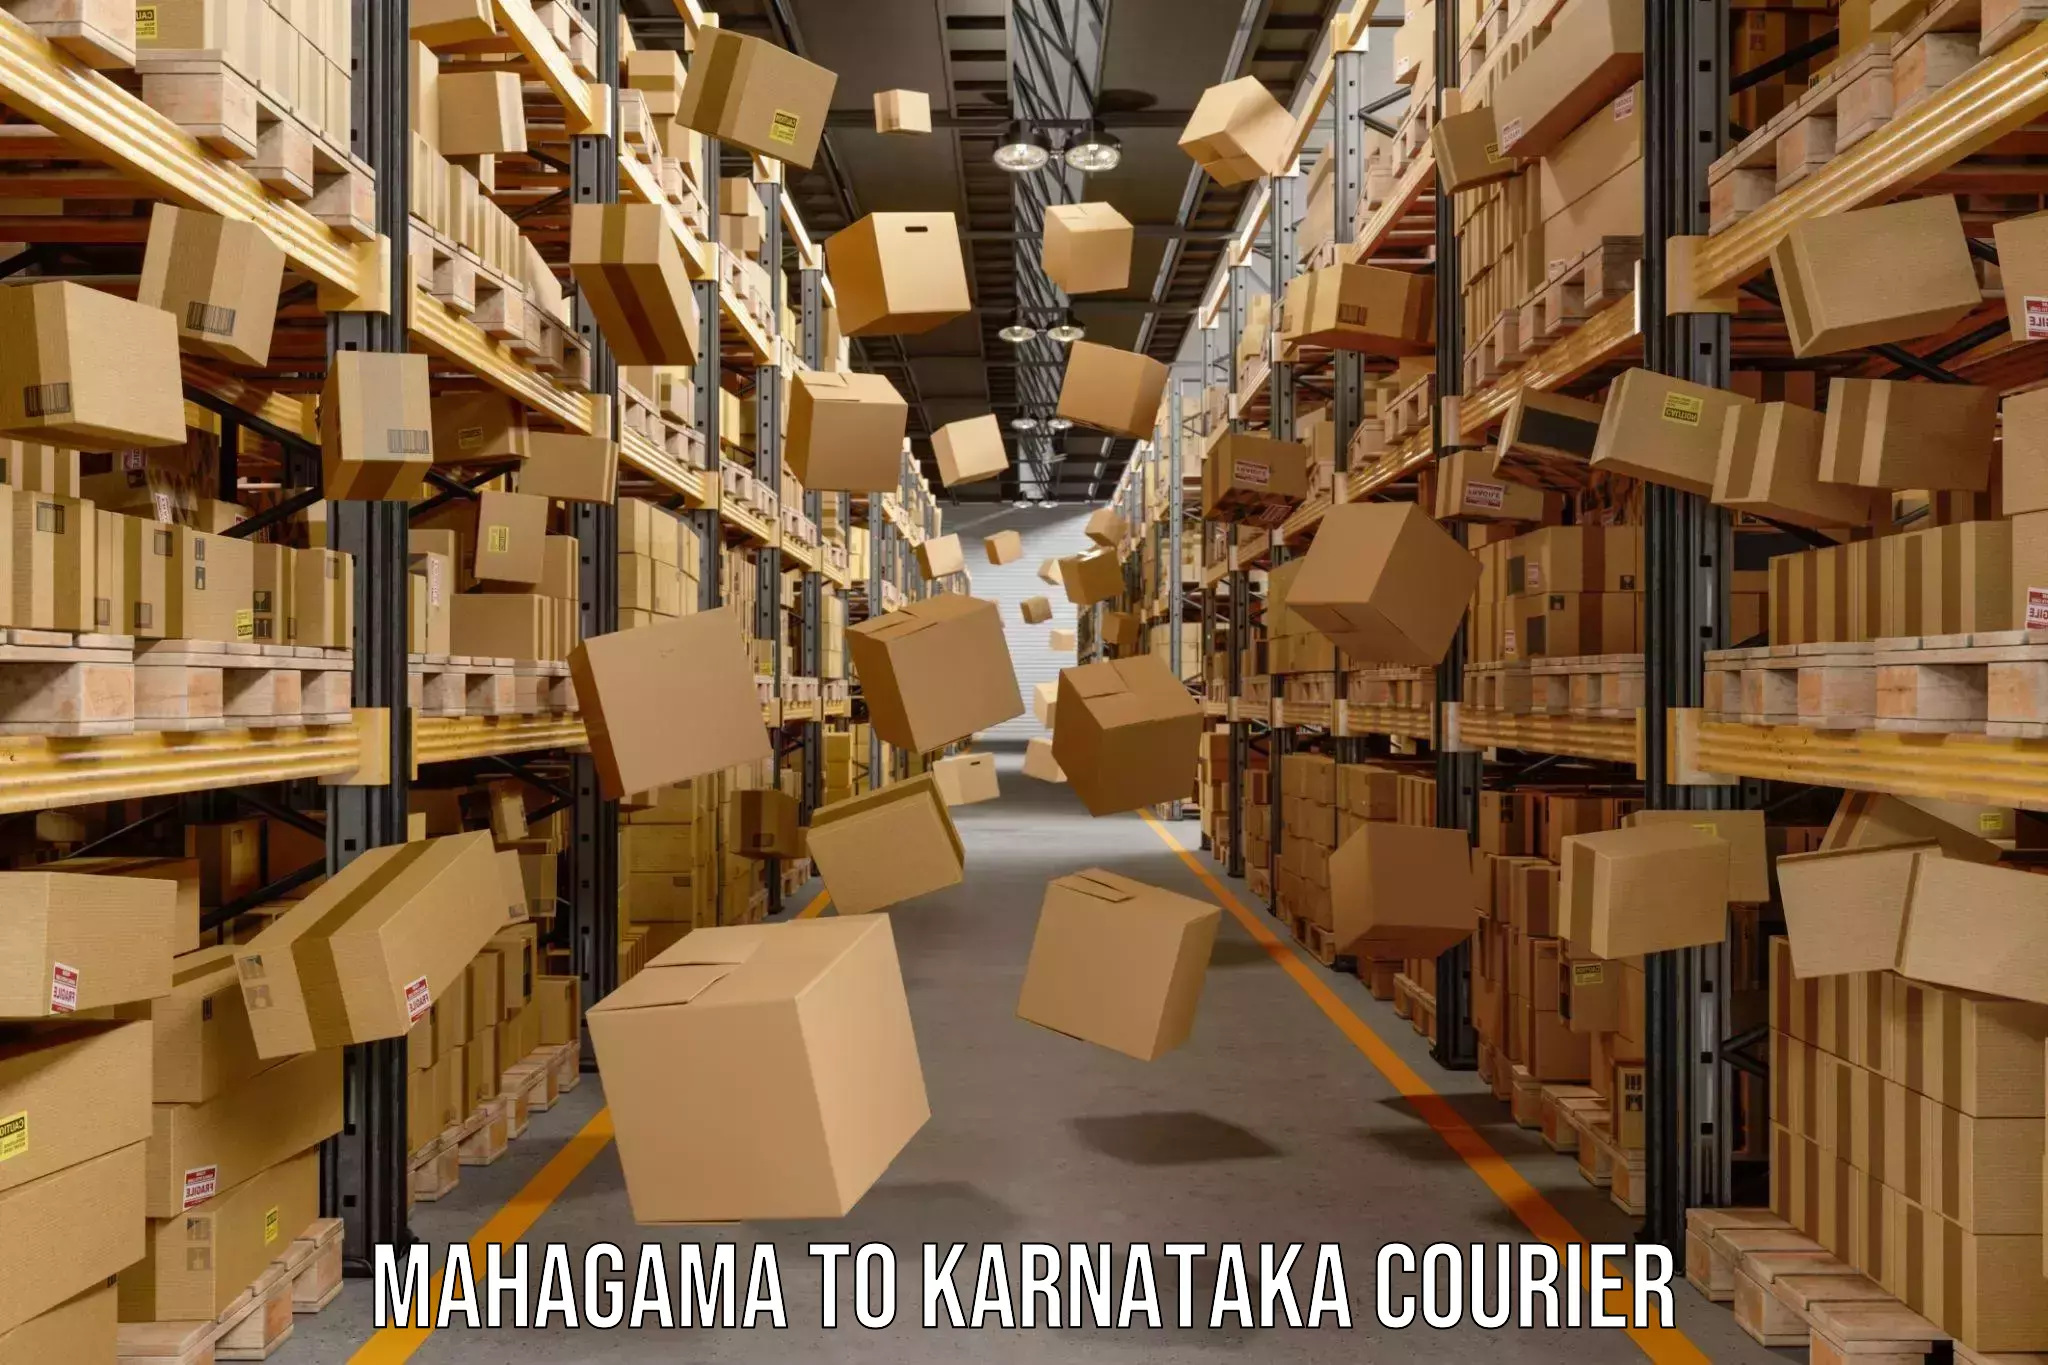 Advanced shipping services Mahagama to Karnataka